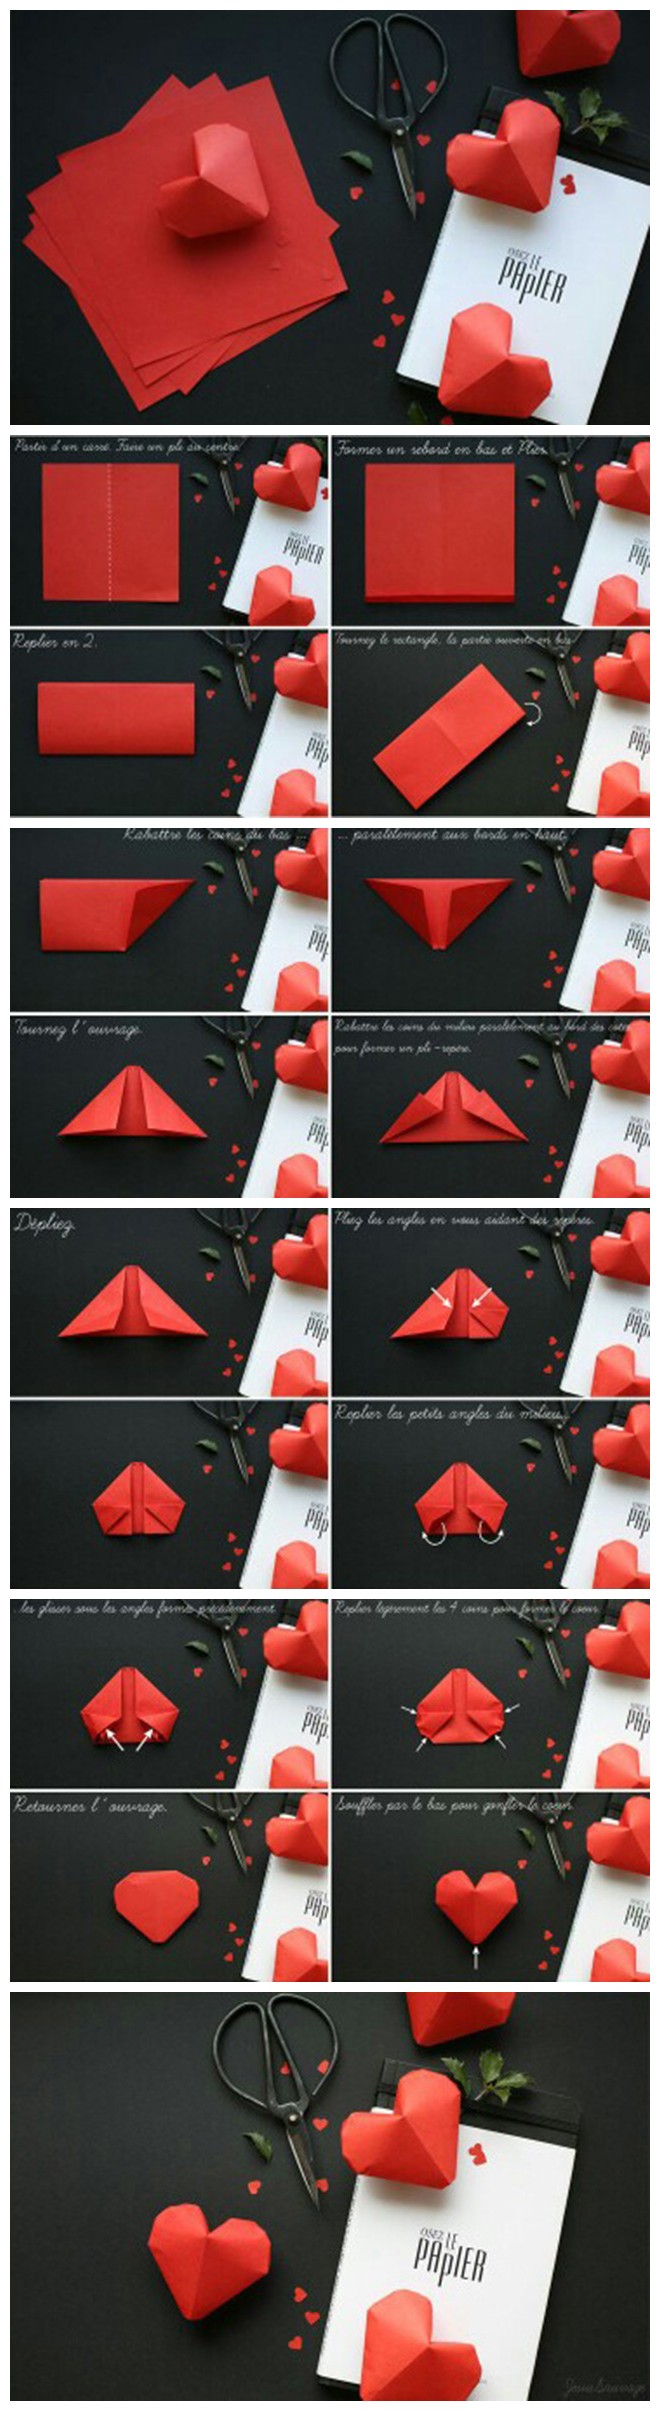 折纸教程get√:立体爱心 纸艺 手工 diy 折纸 心型.520那天送给ta.